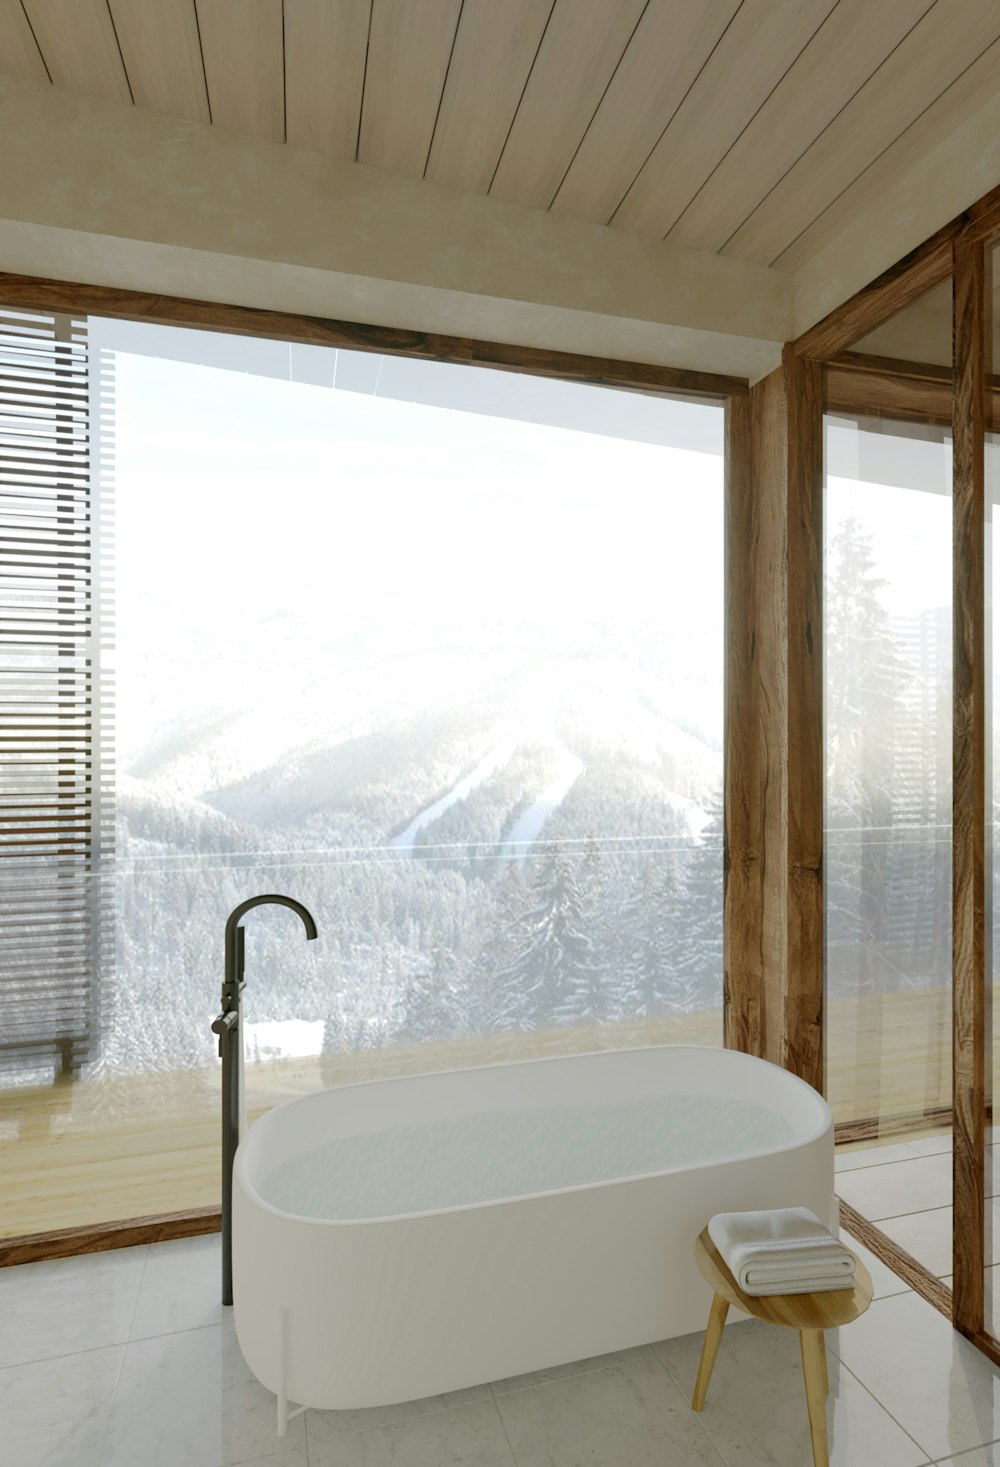 a large white bath tub sitting in a bathroom next to a window